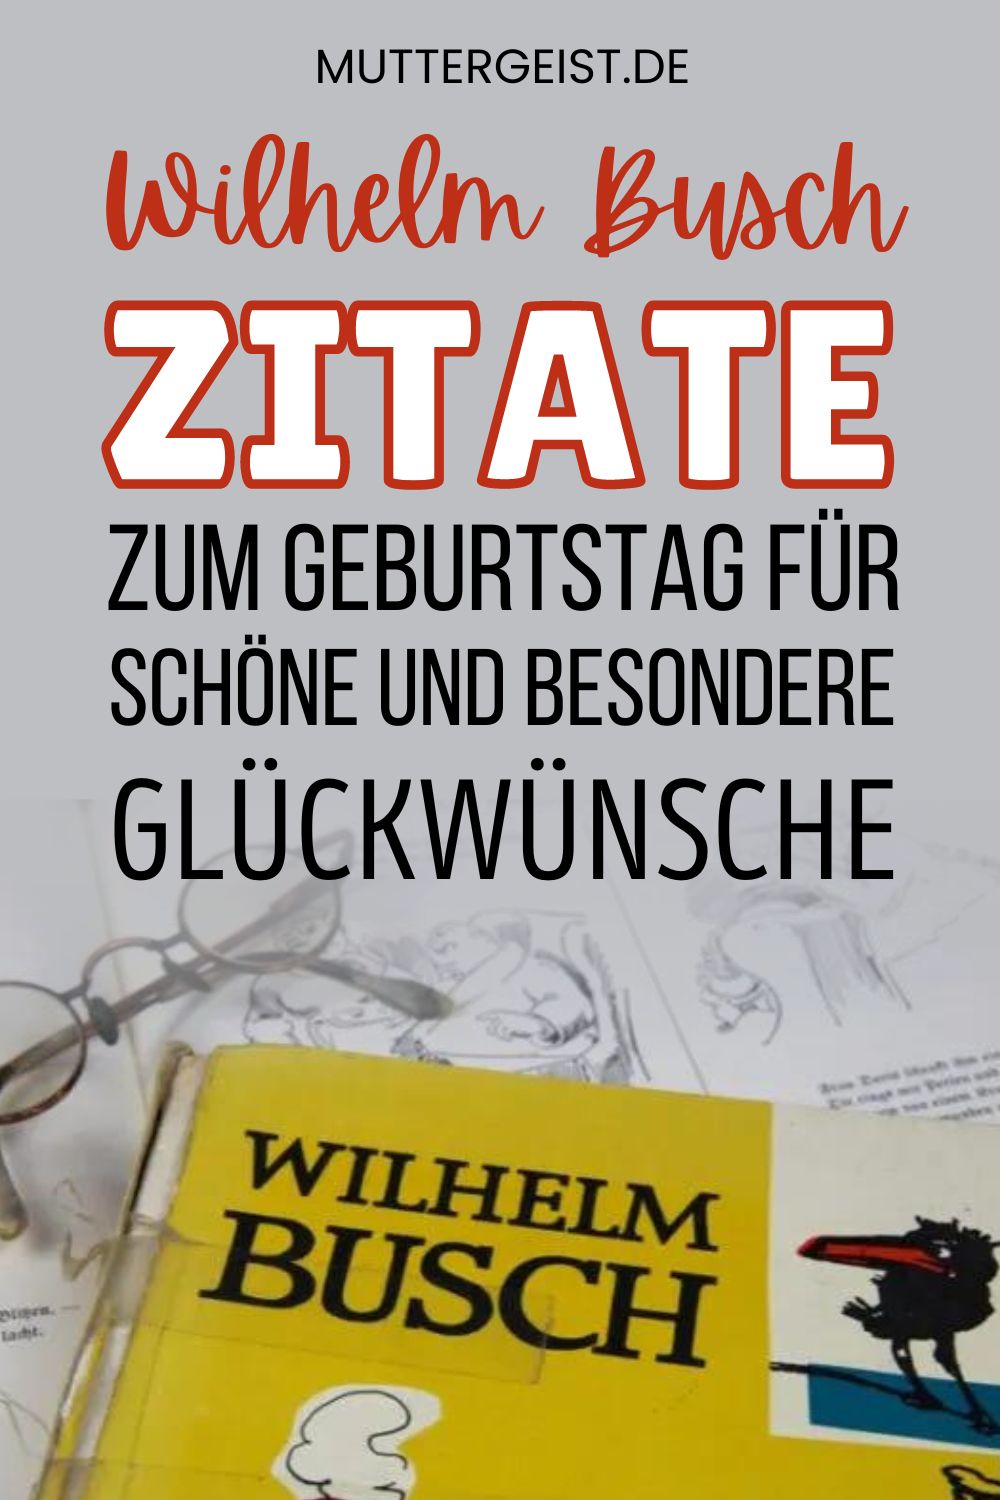 Wilhelm Busch-Zitate zum Geburtstag für schöne und besondere Glückwünsche Pinterest